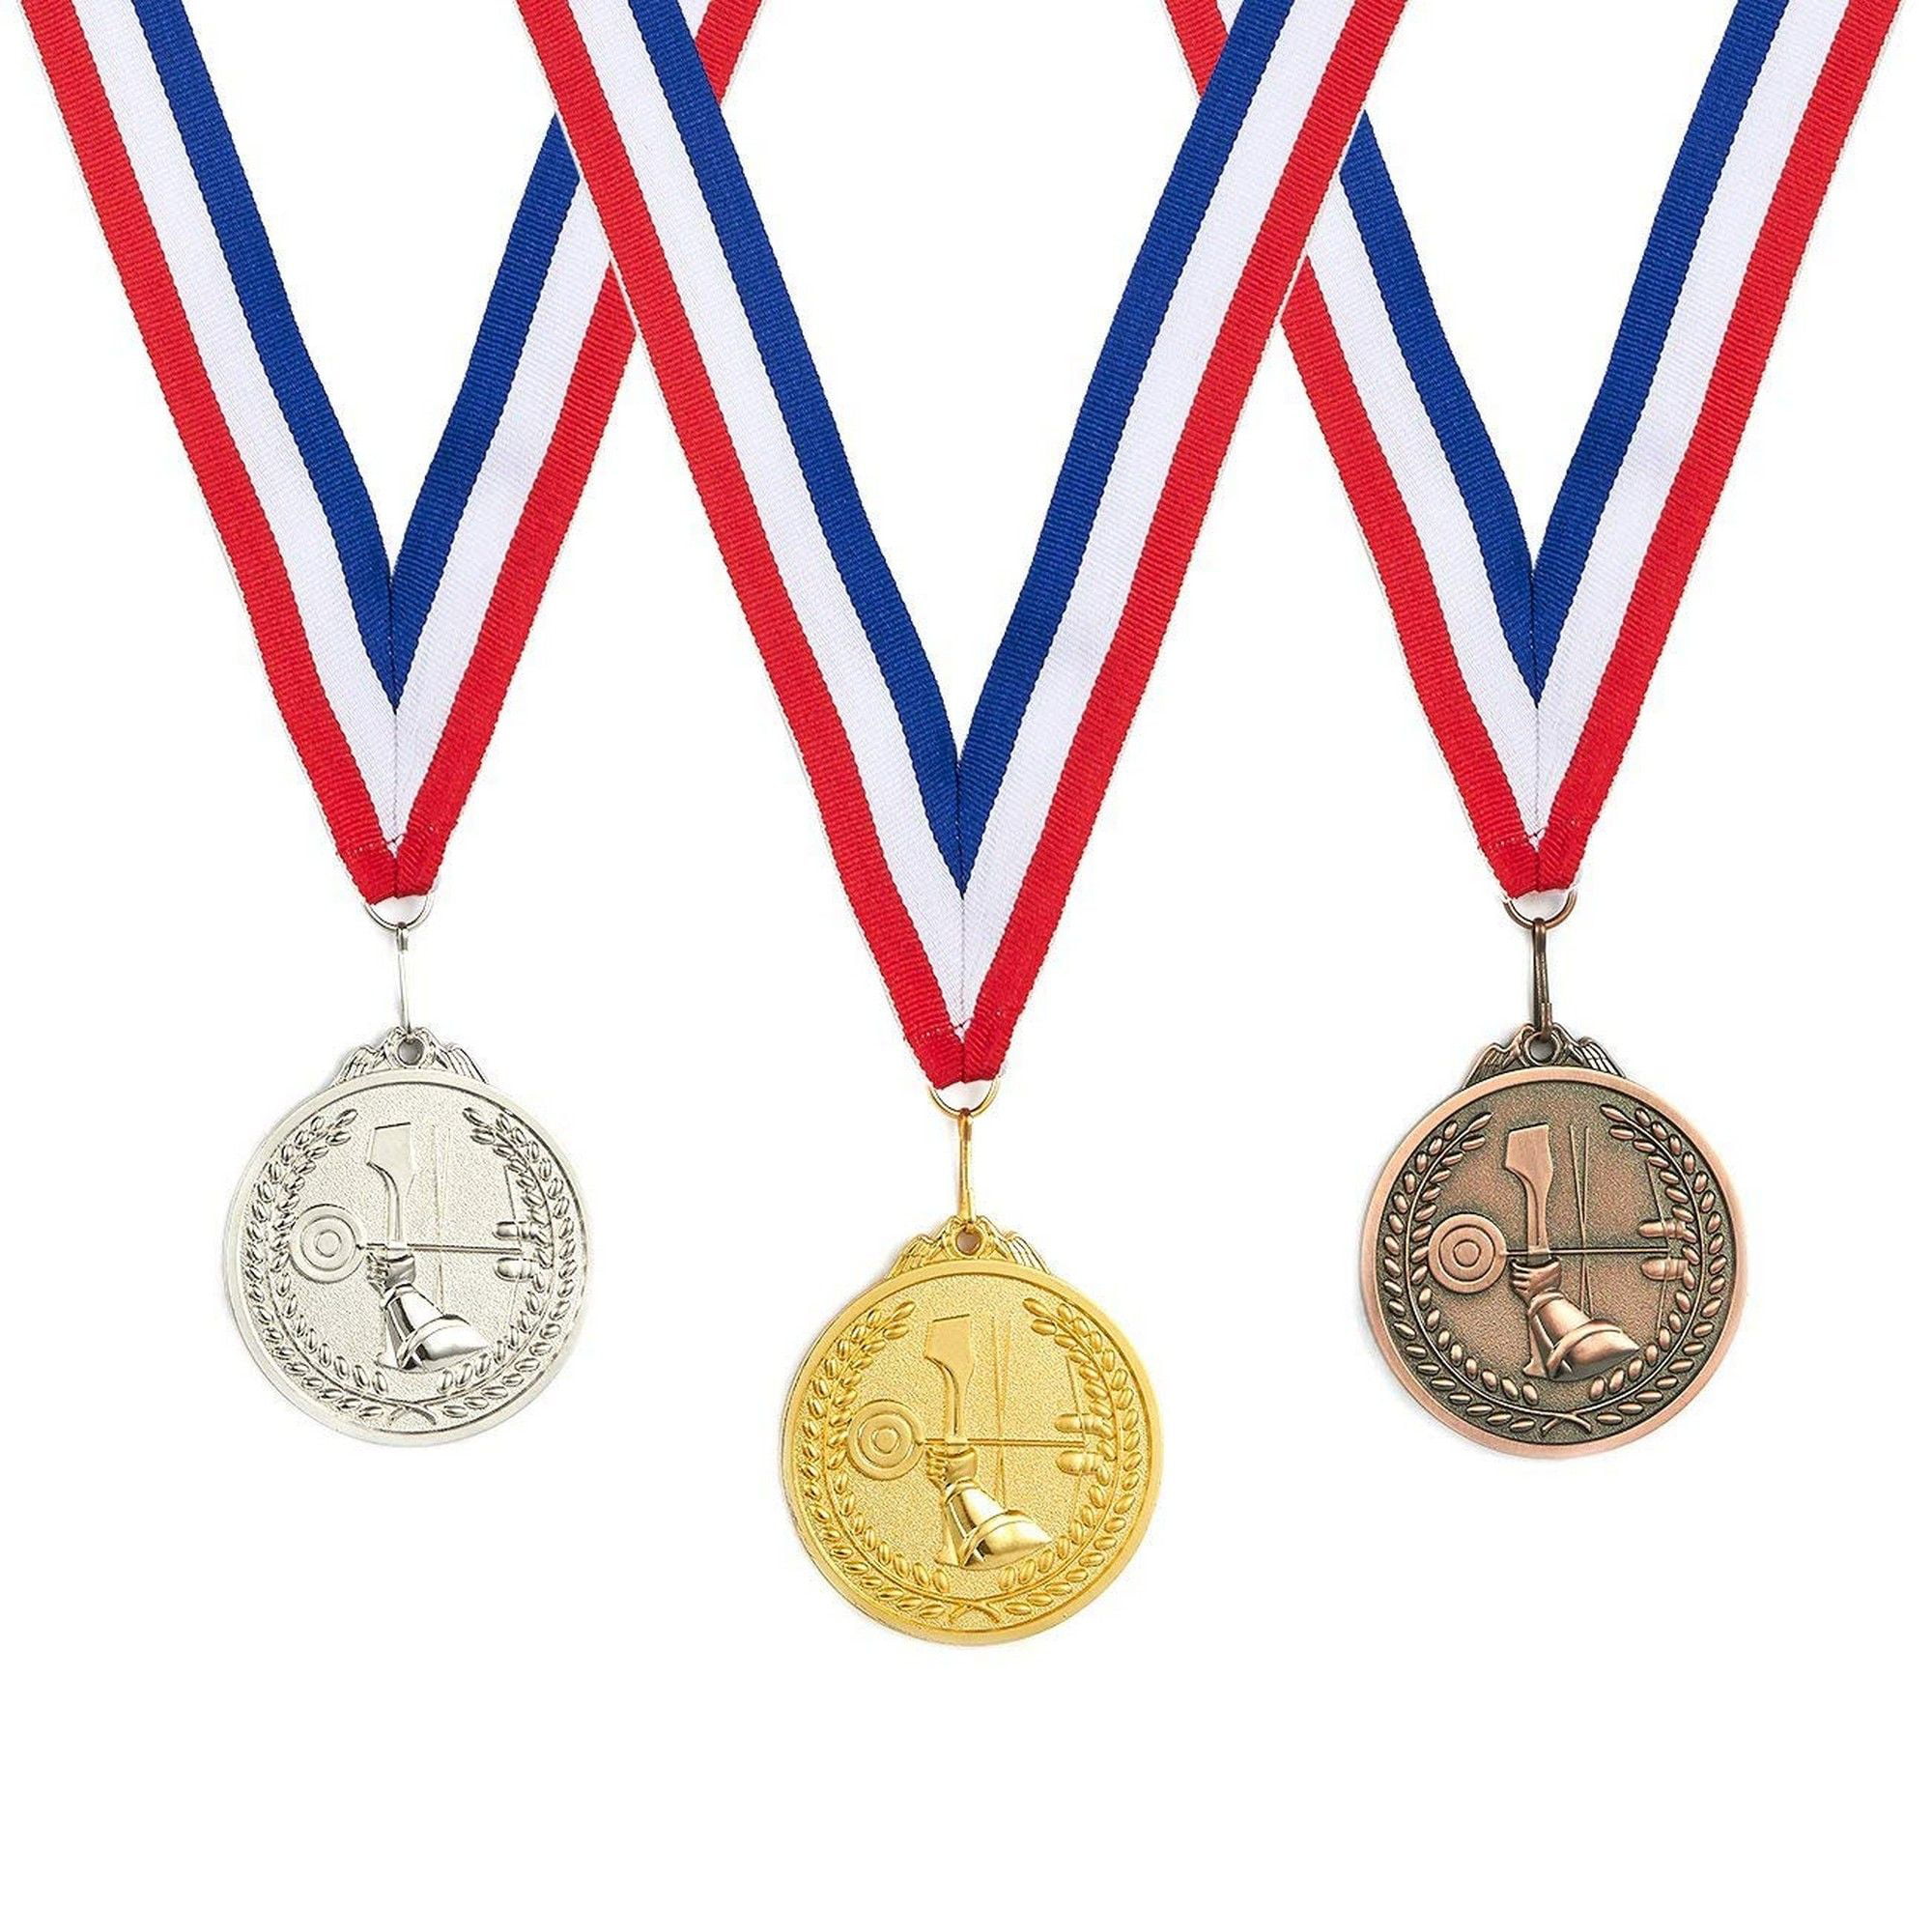 Sports medals. Медали спортивные. Спортивные награды. Спортивные медали на прозрачном фоне. Медали для детей спортивные.